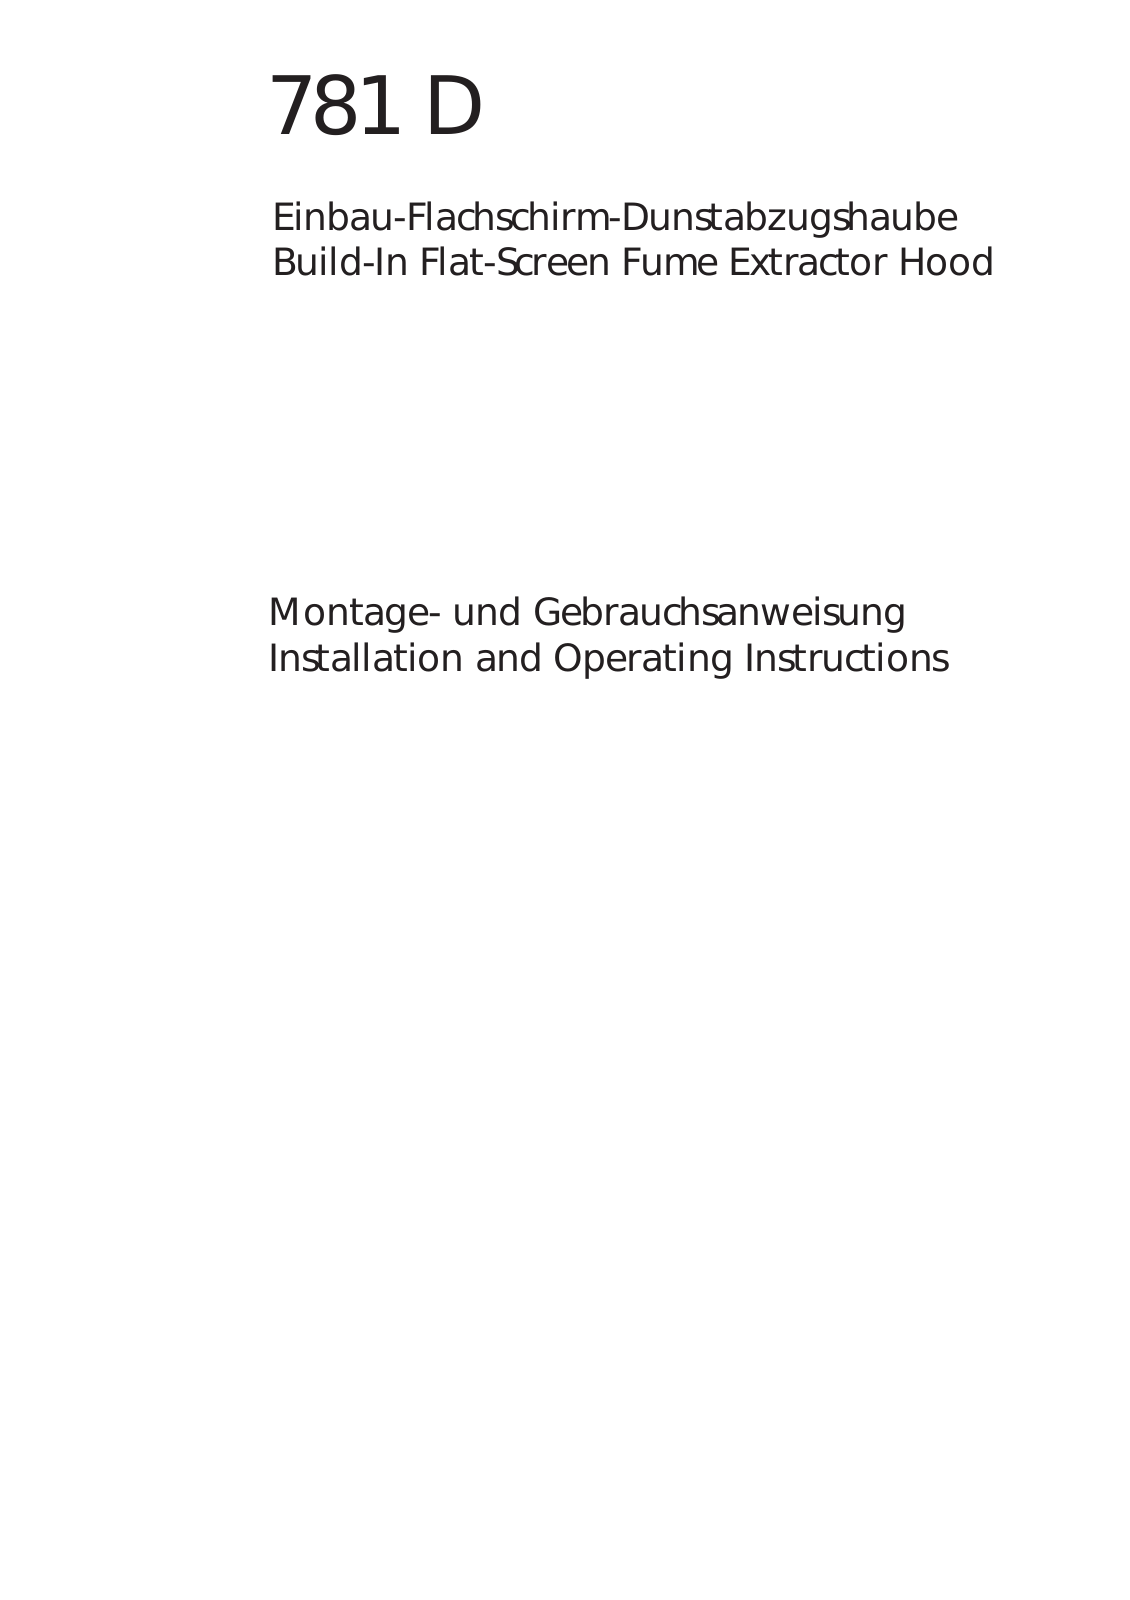 AEG 781D-B3D User Manual